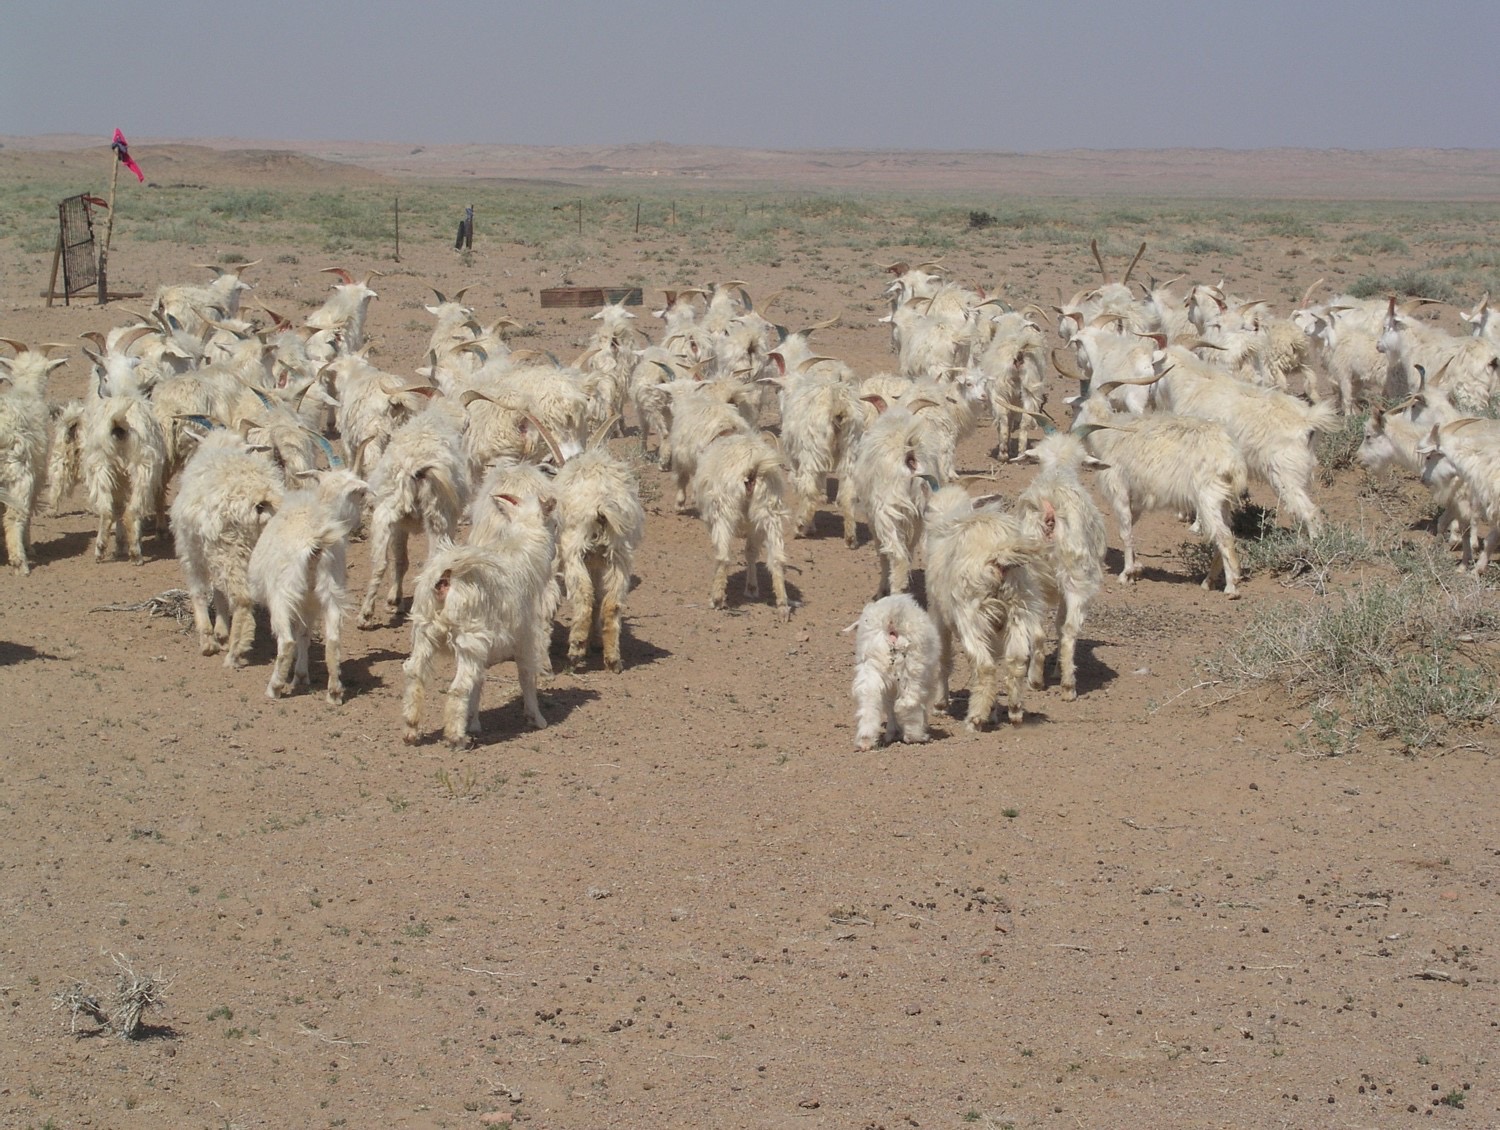 Sheep in Mongolia. Credit: Dr Wei He / Prof. Baoyu Zhao